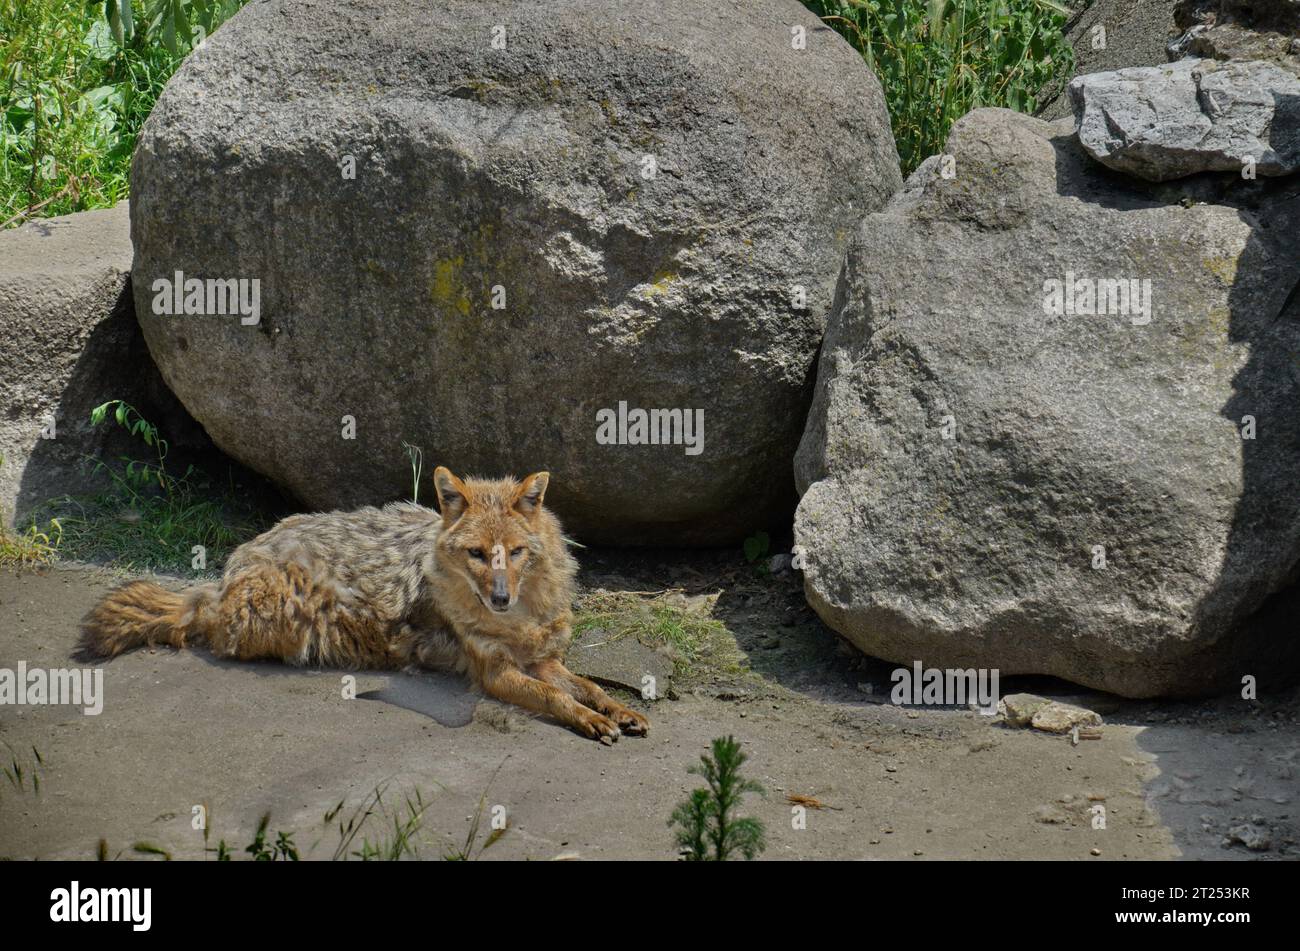 Der goldene Schakal Canis aureus indicus liegt auf dem Boden neben einem großen Stein, Sofia, Bulgarien Stockfoto